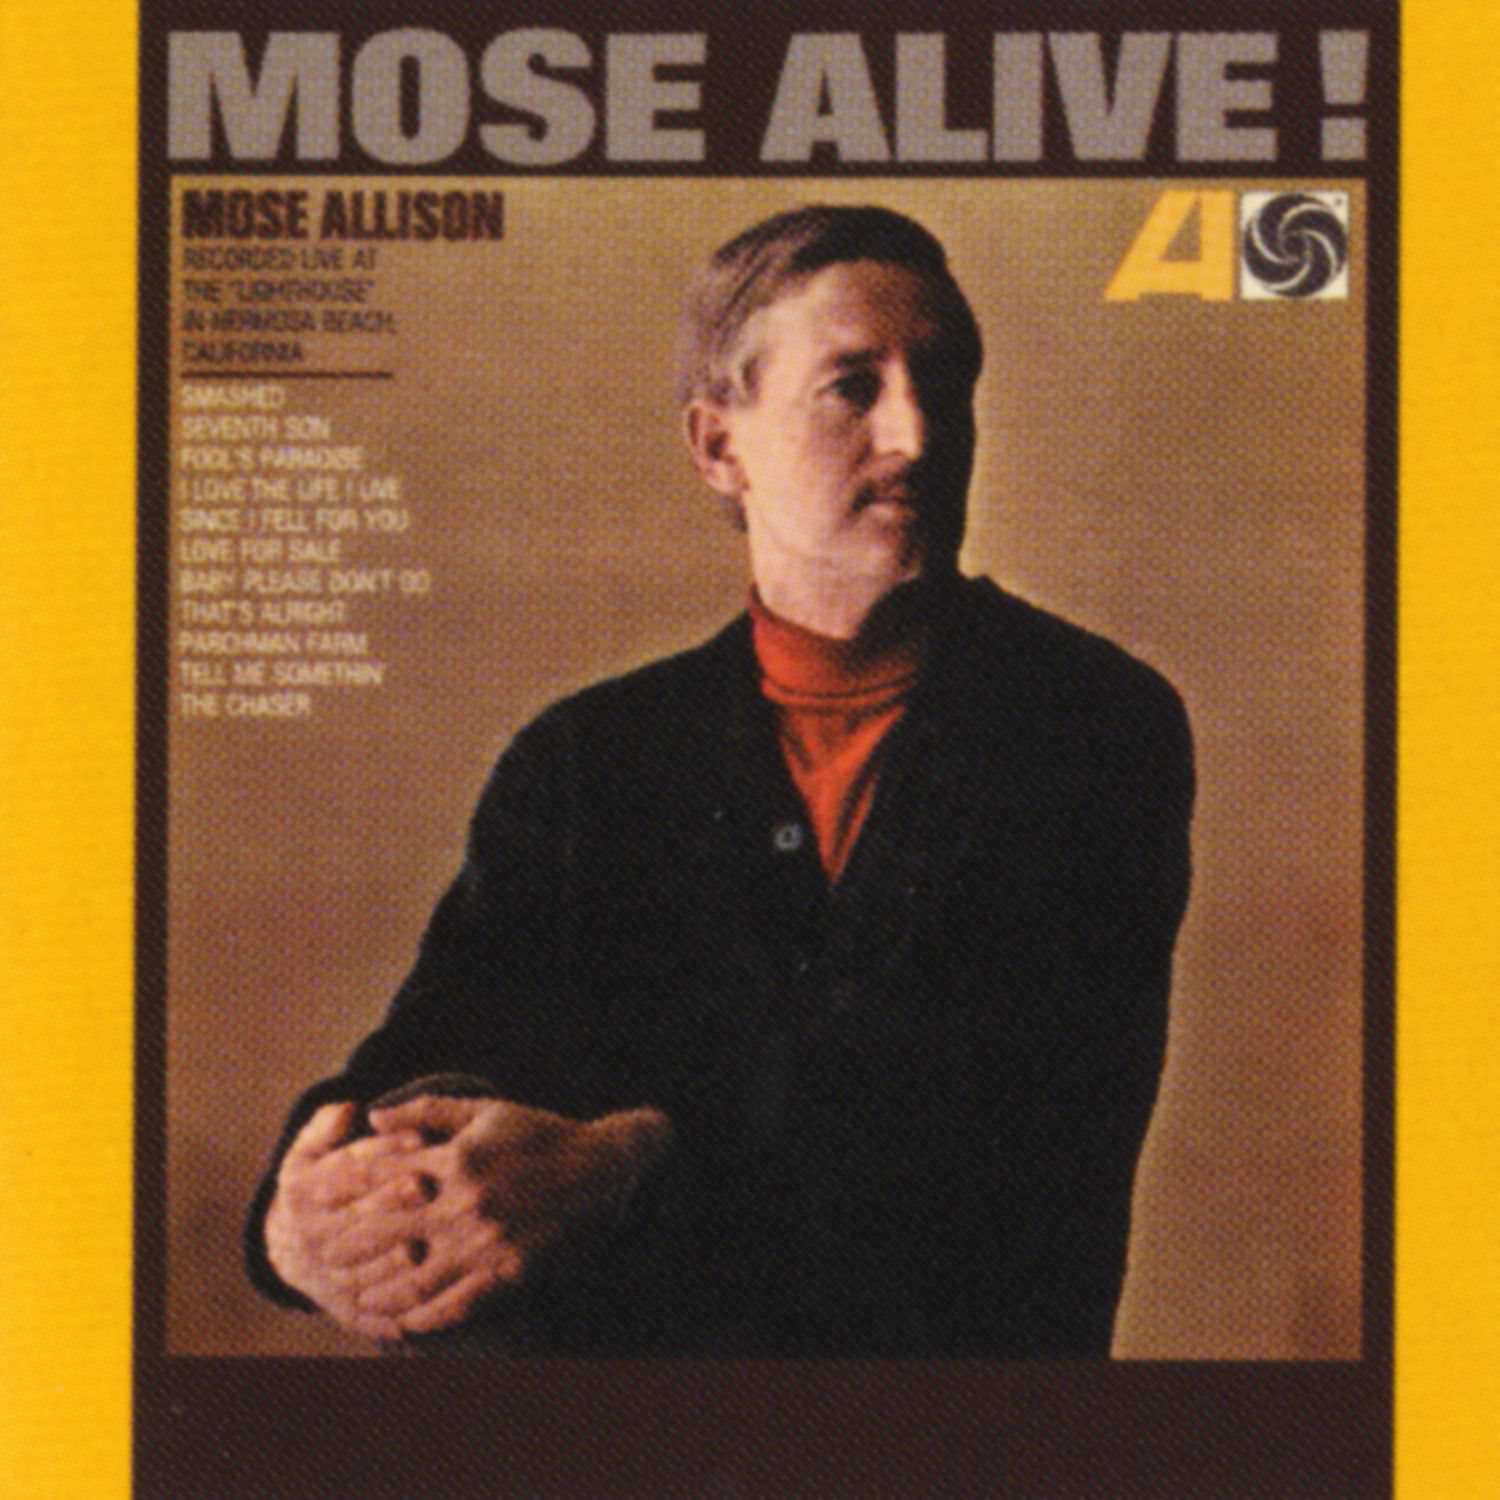 Mose Allison - Mose Alive (1965/2011) [HDTracks FLAC 24bit/192kHz]